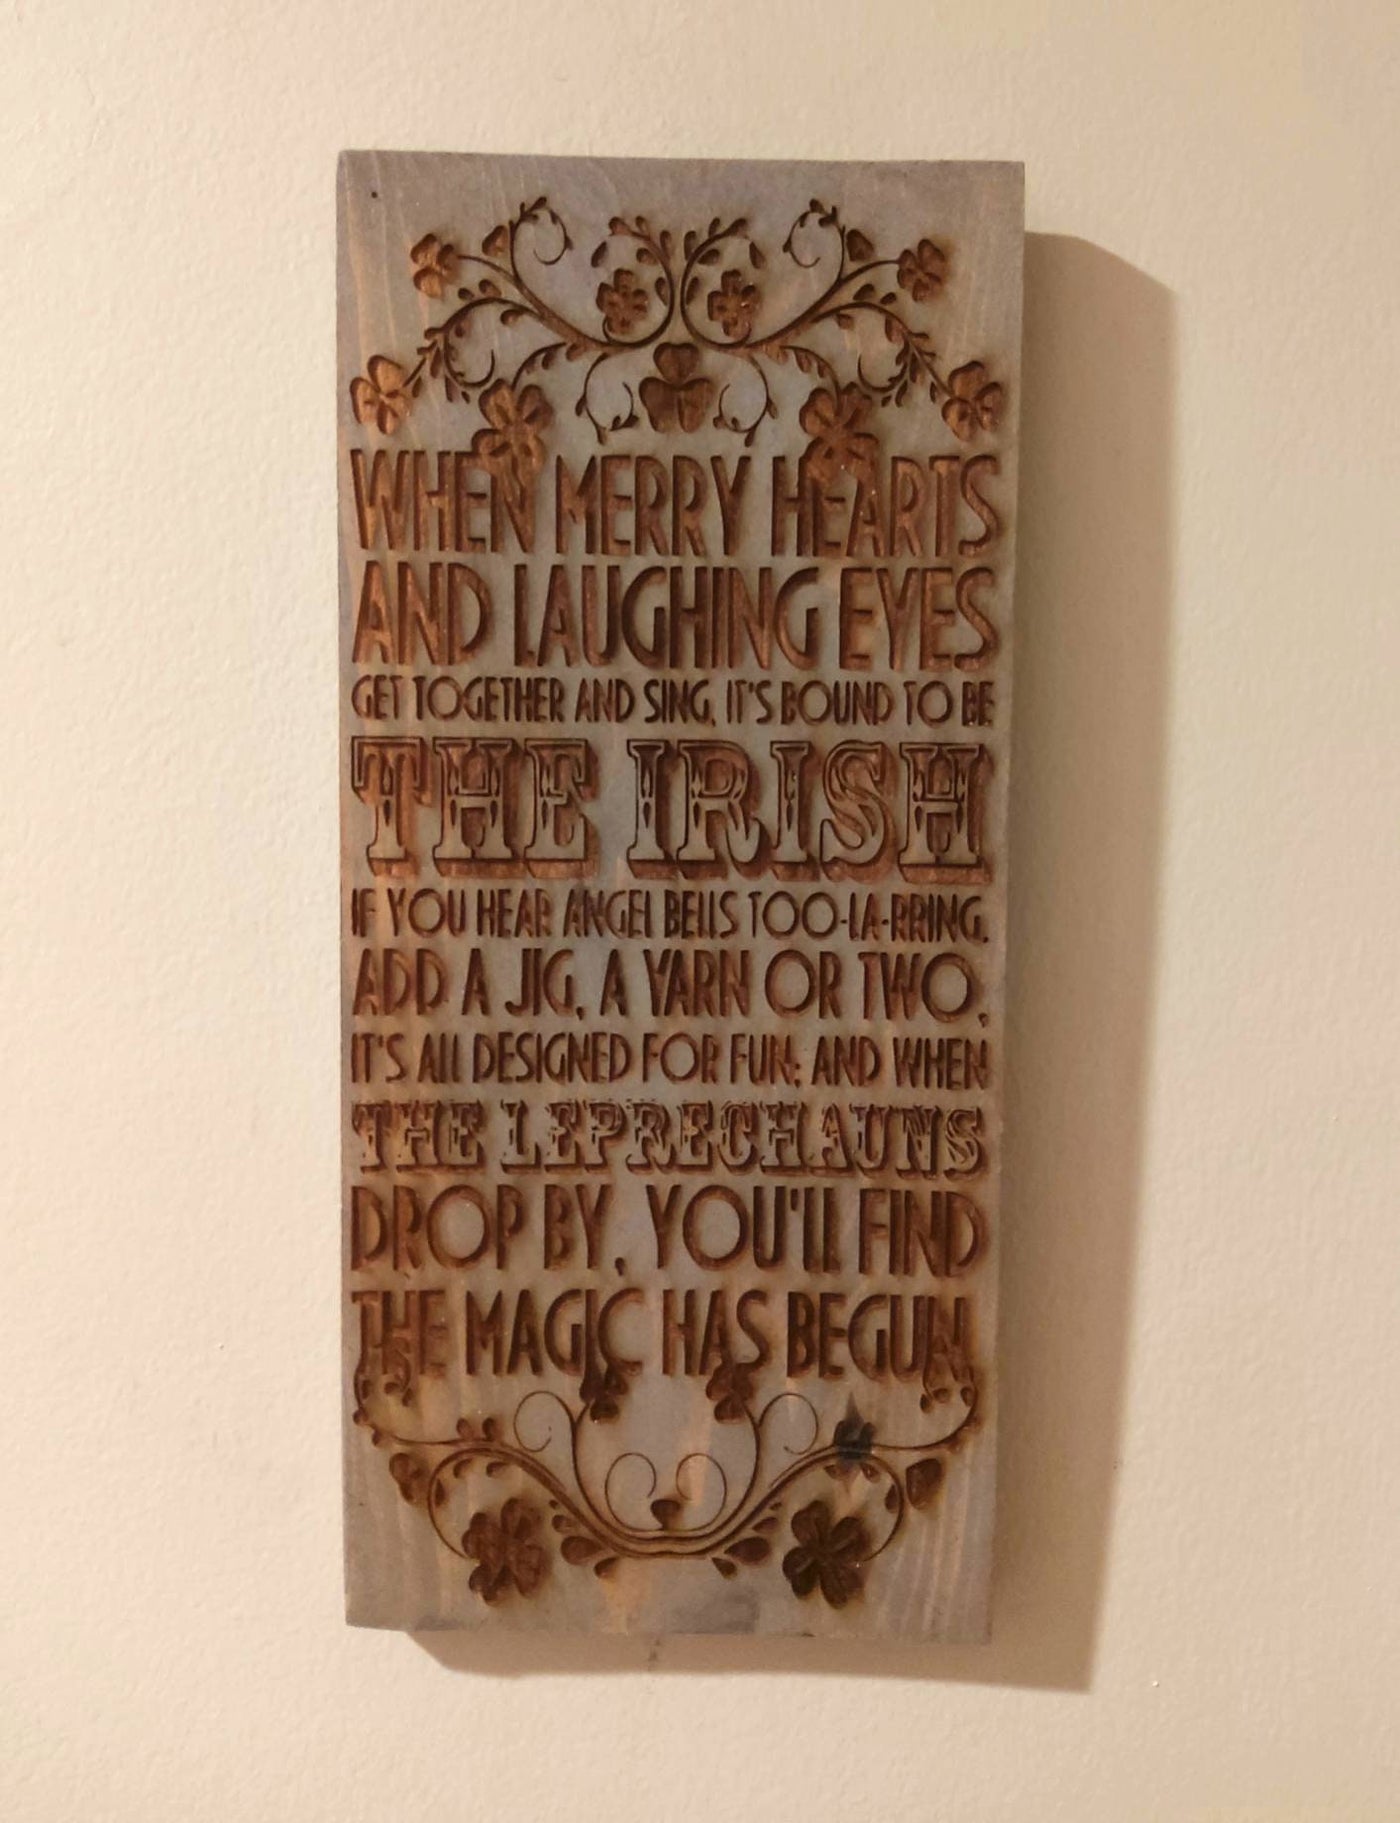 Decrative Irish proverb wooden sign